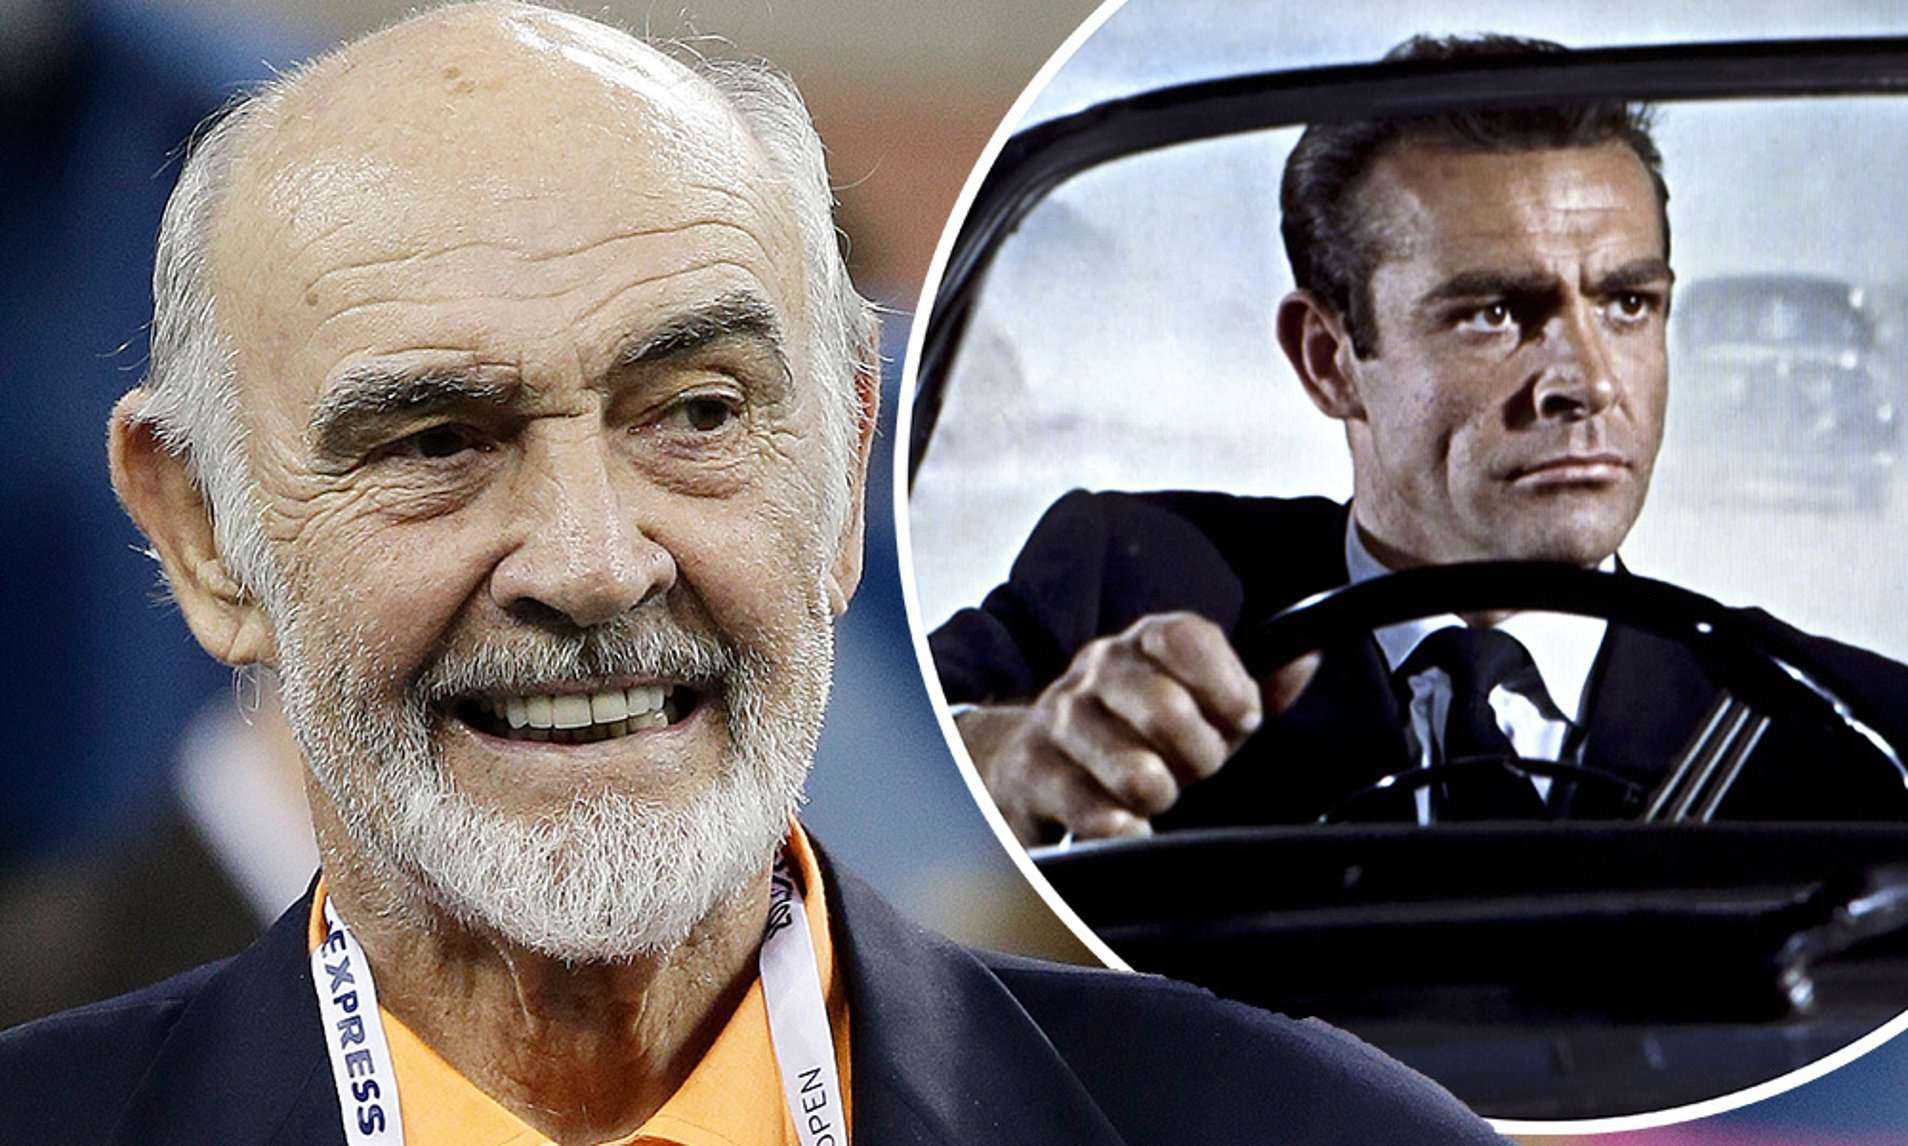 Diễn viên Sean Connery - James Bond đầu tiên - qua đời ở tuổi 90